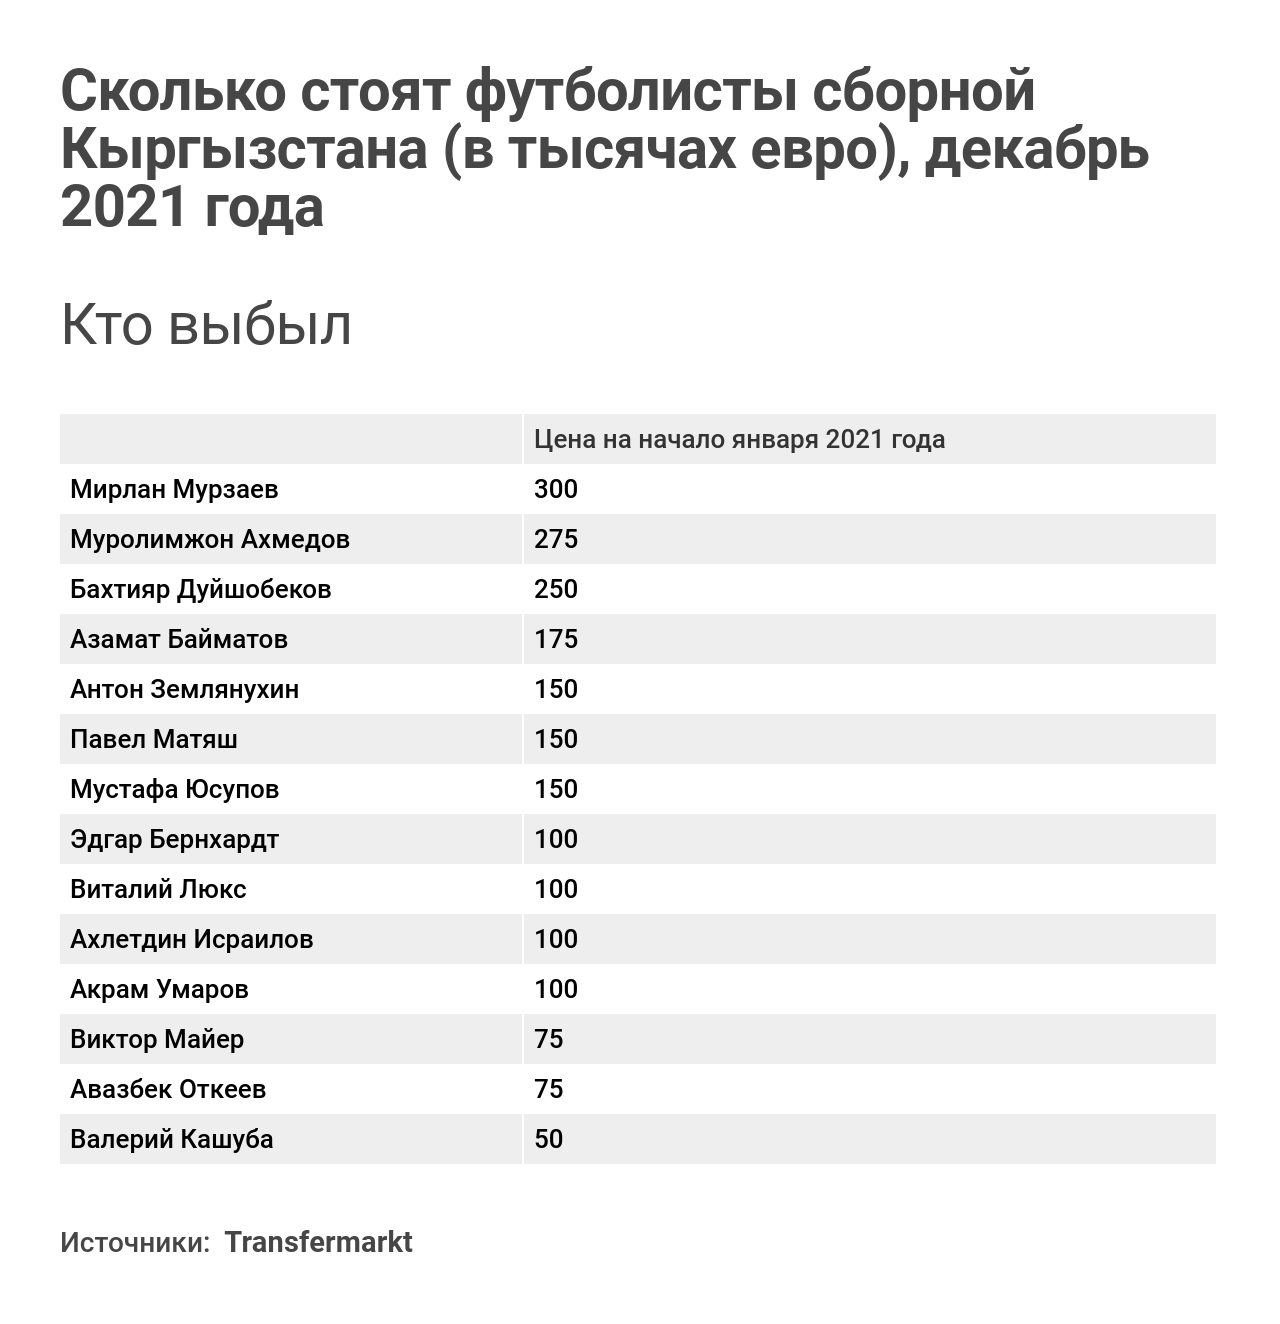 Сколько стоят футболисты сборной Кыргызстана (в тысячах евро), декабрь 2021 года  - Sputnik Кыргызстан